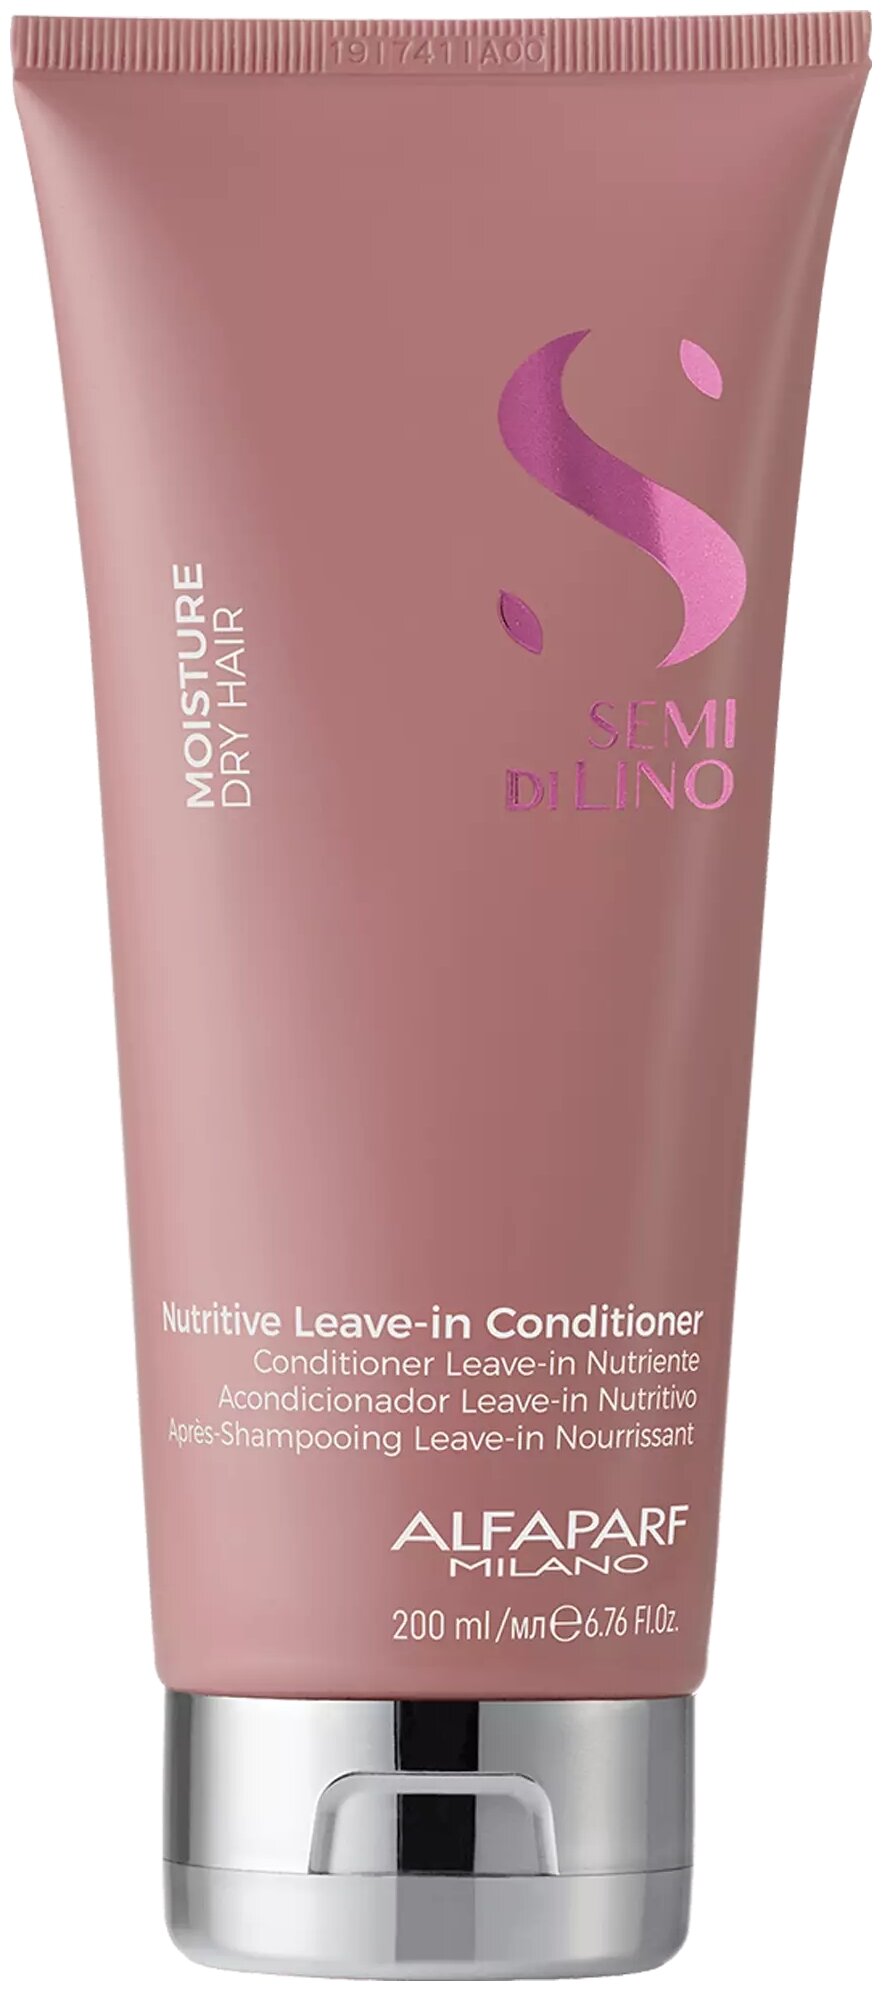 Кондиционер несмываемый для сухих волос Alfaparf Milano SDL M Nutritive Leave-In Conditioner, 200 мл